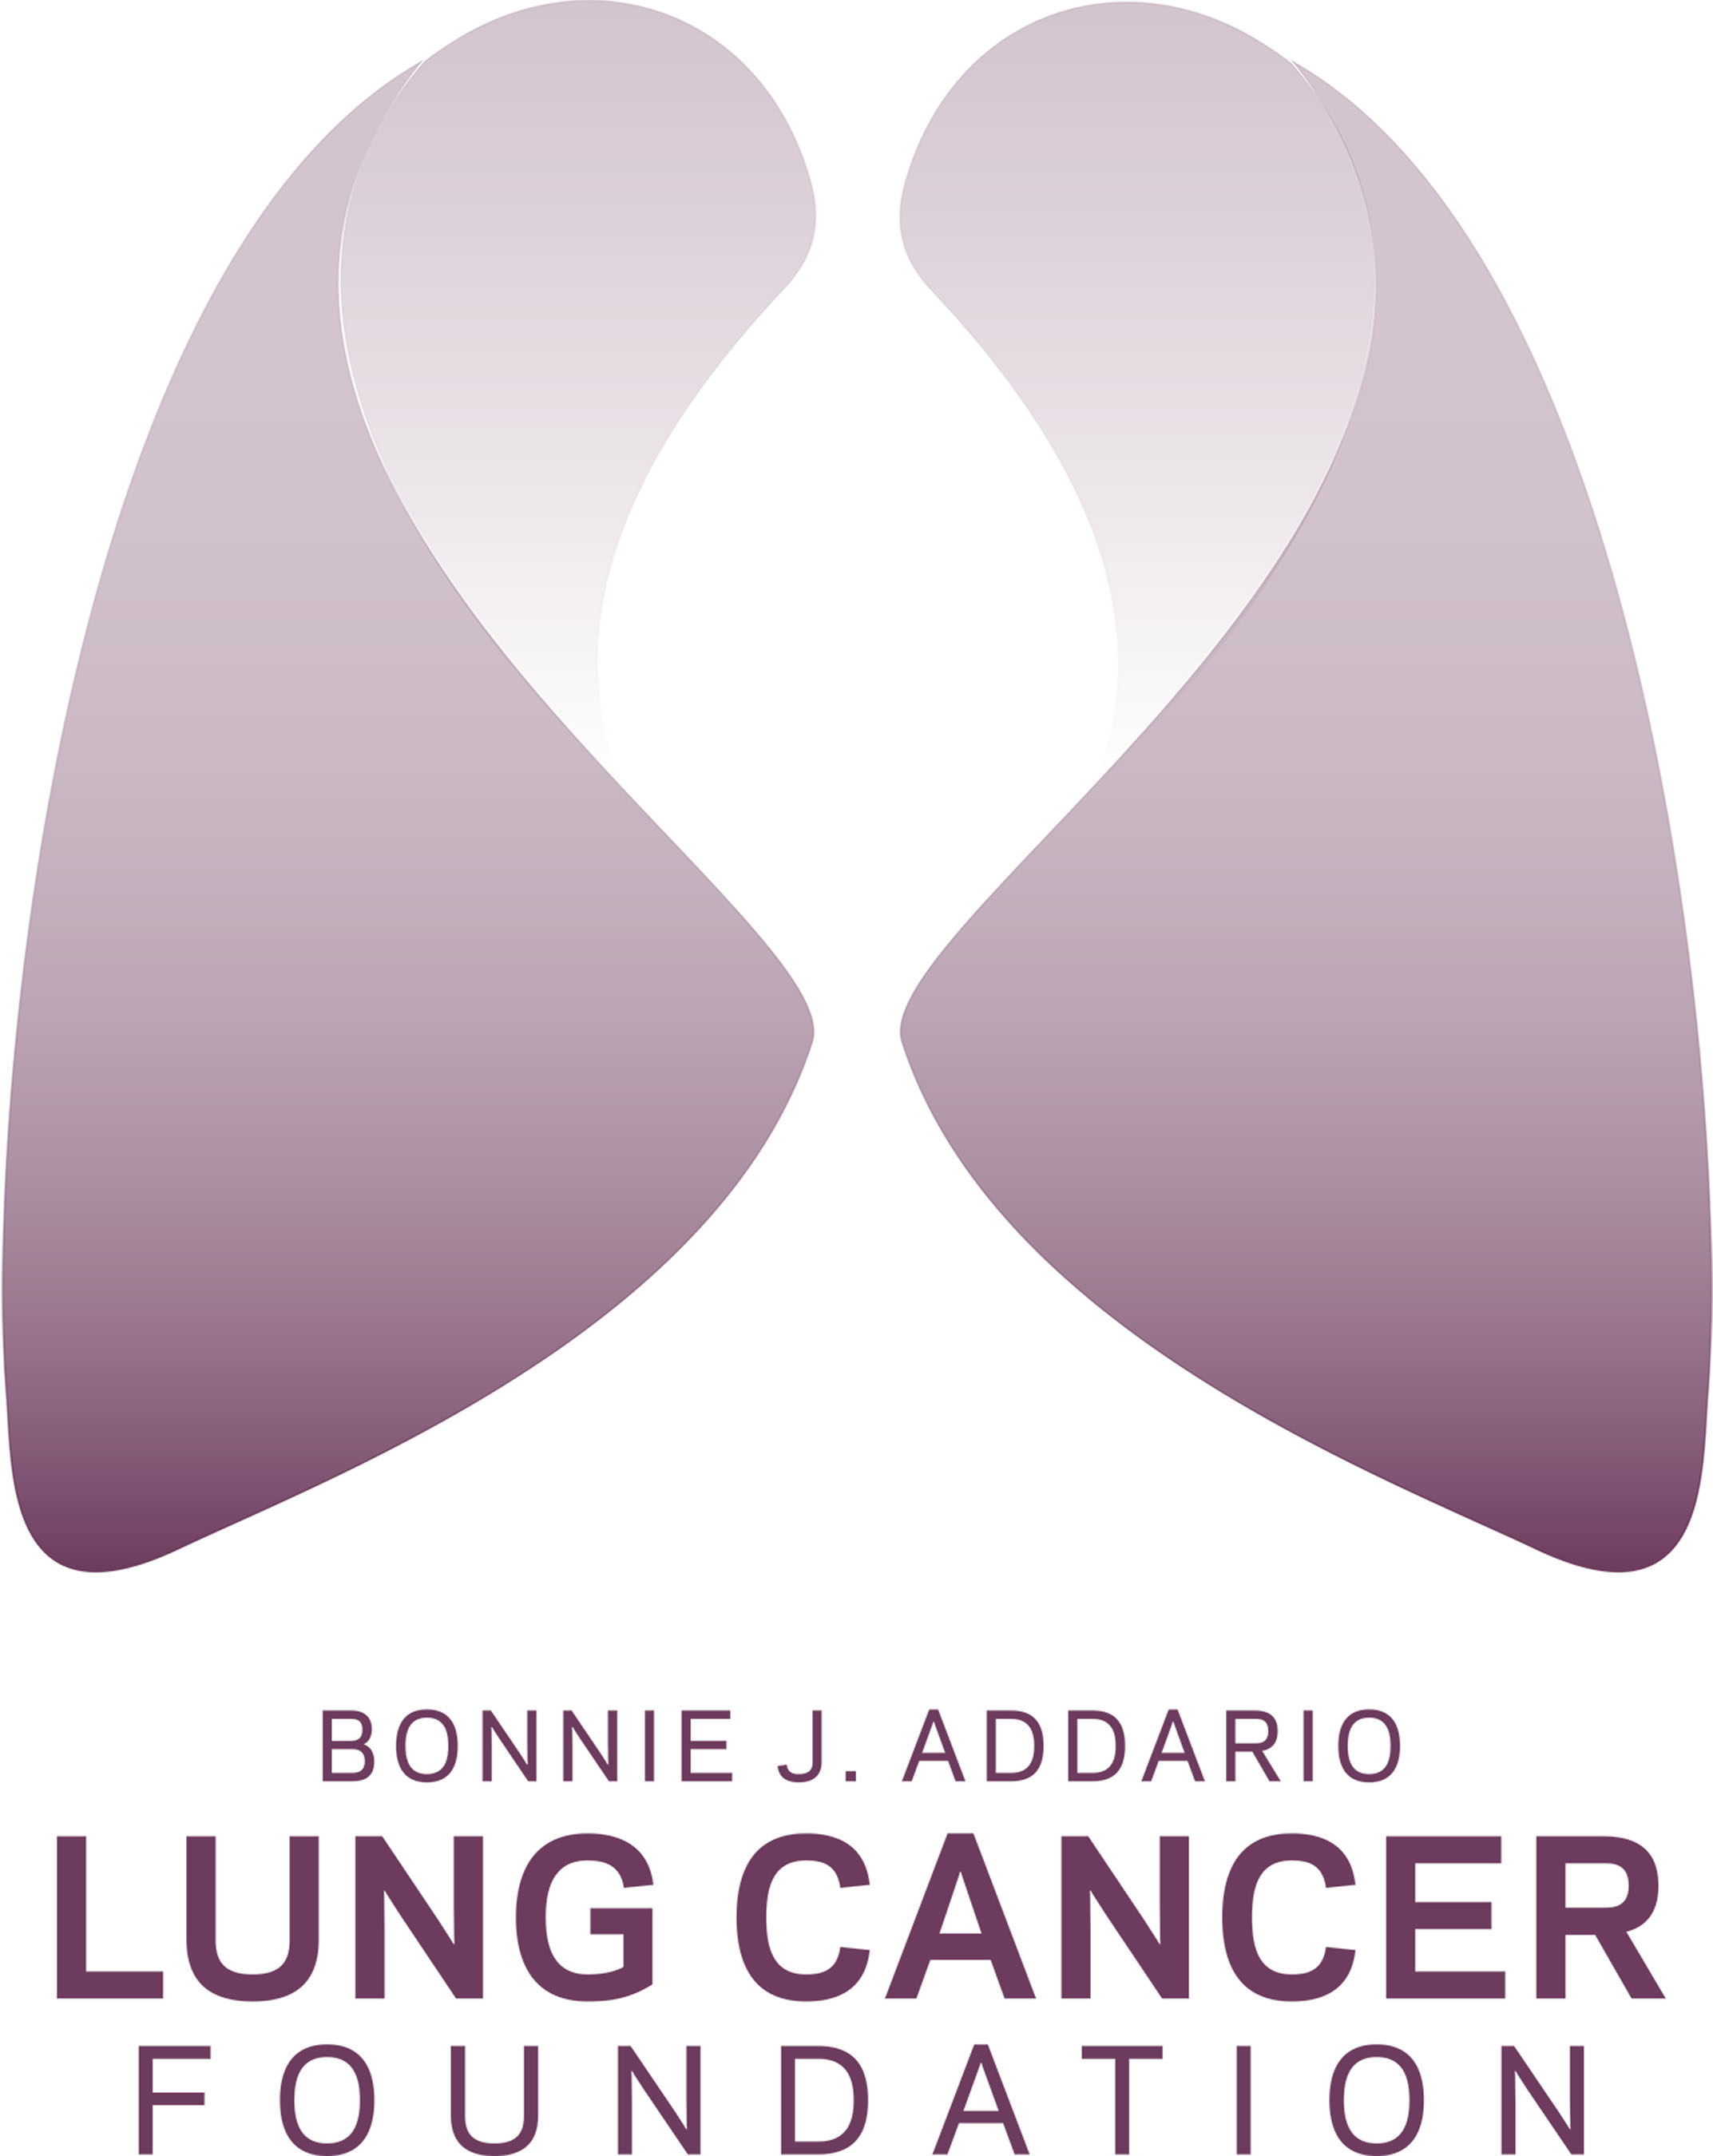 Bonnie J. Addario Lung Cancer Foundation logo. (PRNewsFoto/Addario Lung Cancer Foundation) (PRNewsFoto/Addario Lung Cancer Foundation)